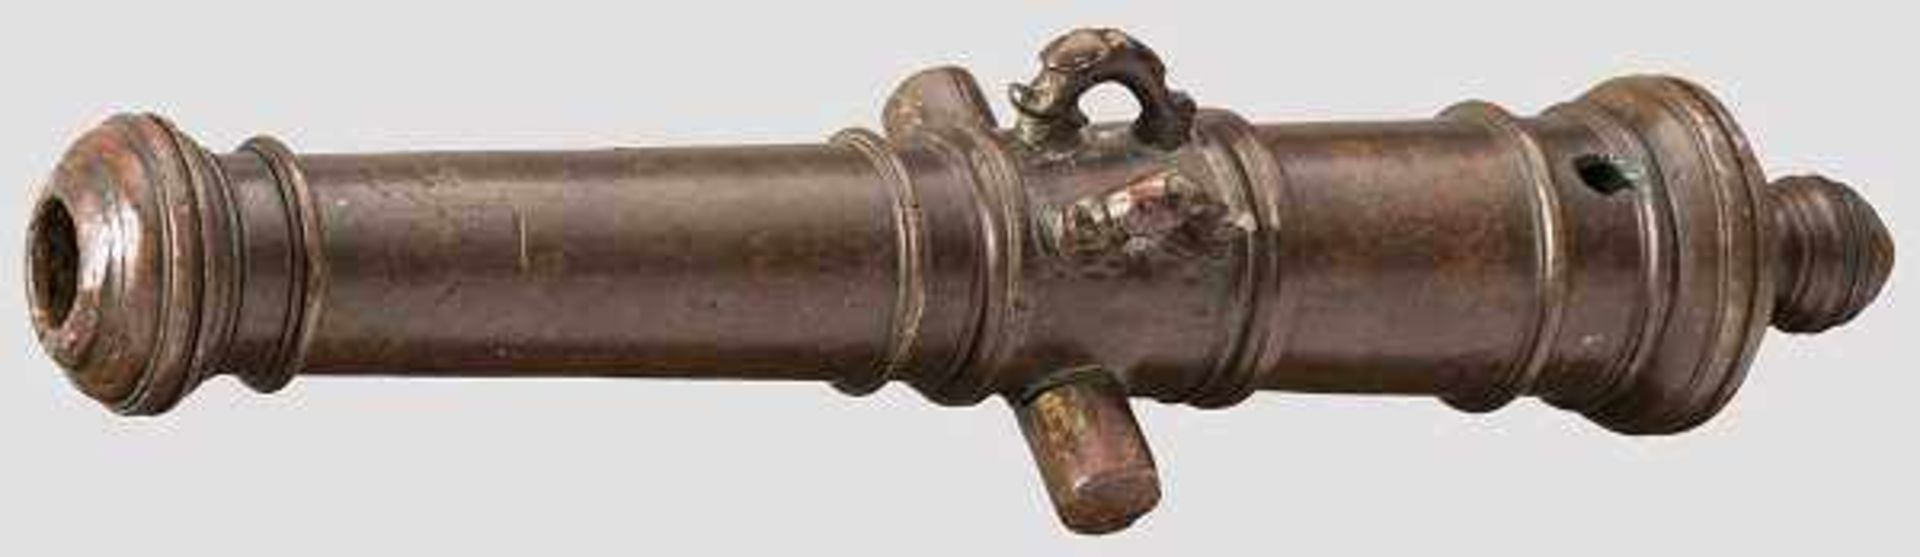 Rohr einer Modellkanone, deutsch um 1700 Fein gearbeitete Miniatur eines barocken Geschützrohres aus